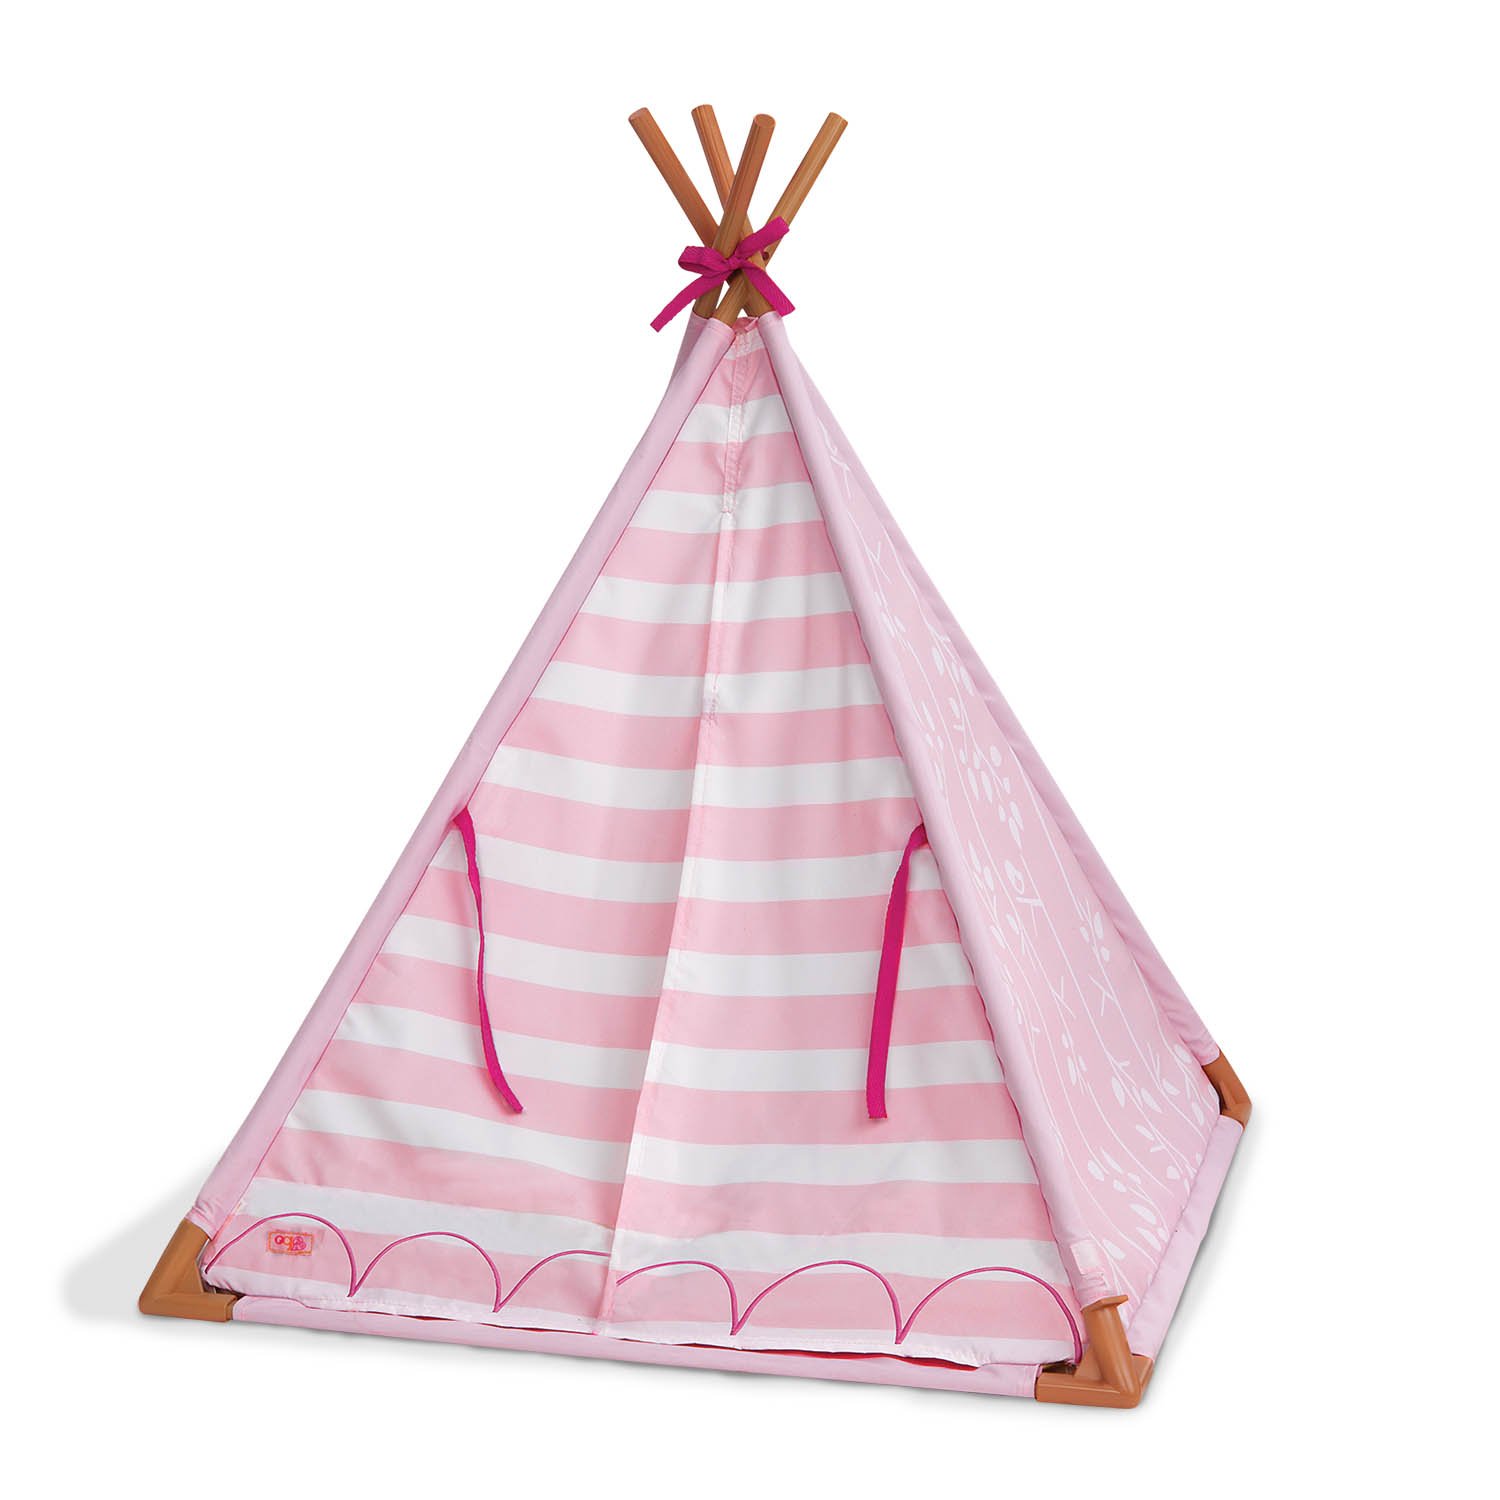 Our Generation – Camping-Set – Essen Spielen – 46 cm Puppenzubehör – Rollenspiel – Spielzeug für Kinder ab 3 Jahren – Cozy Tipi Zelt